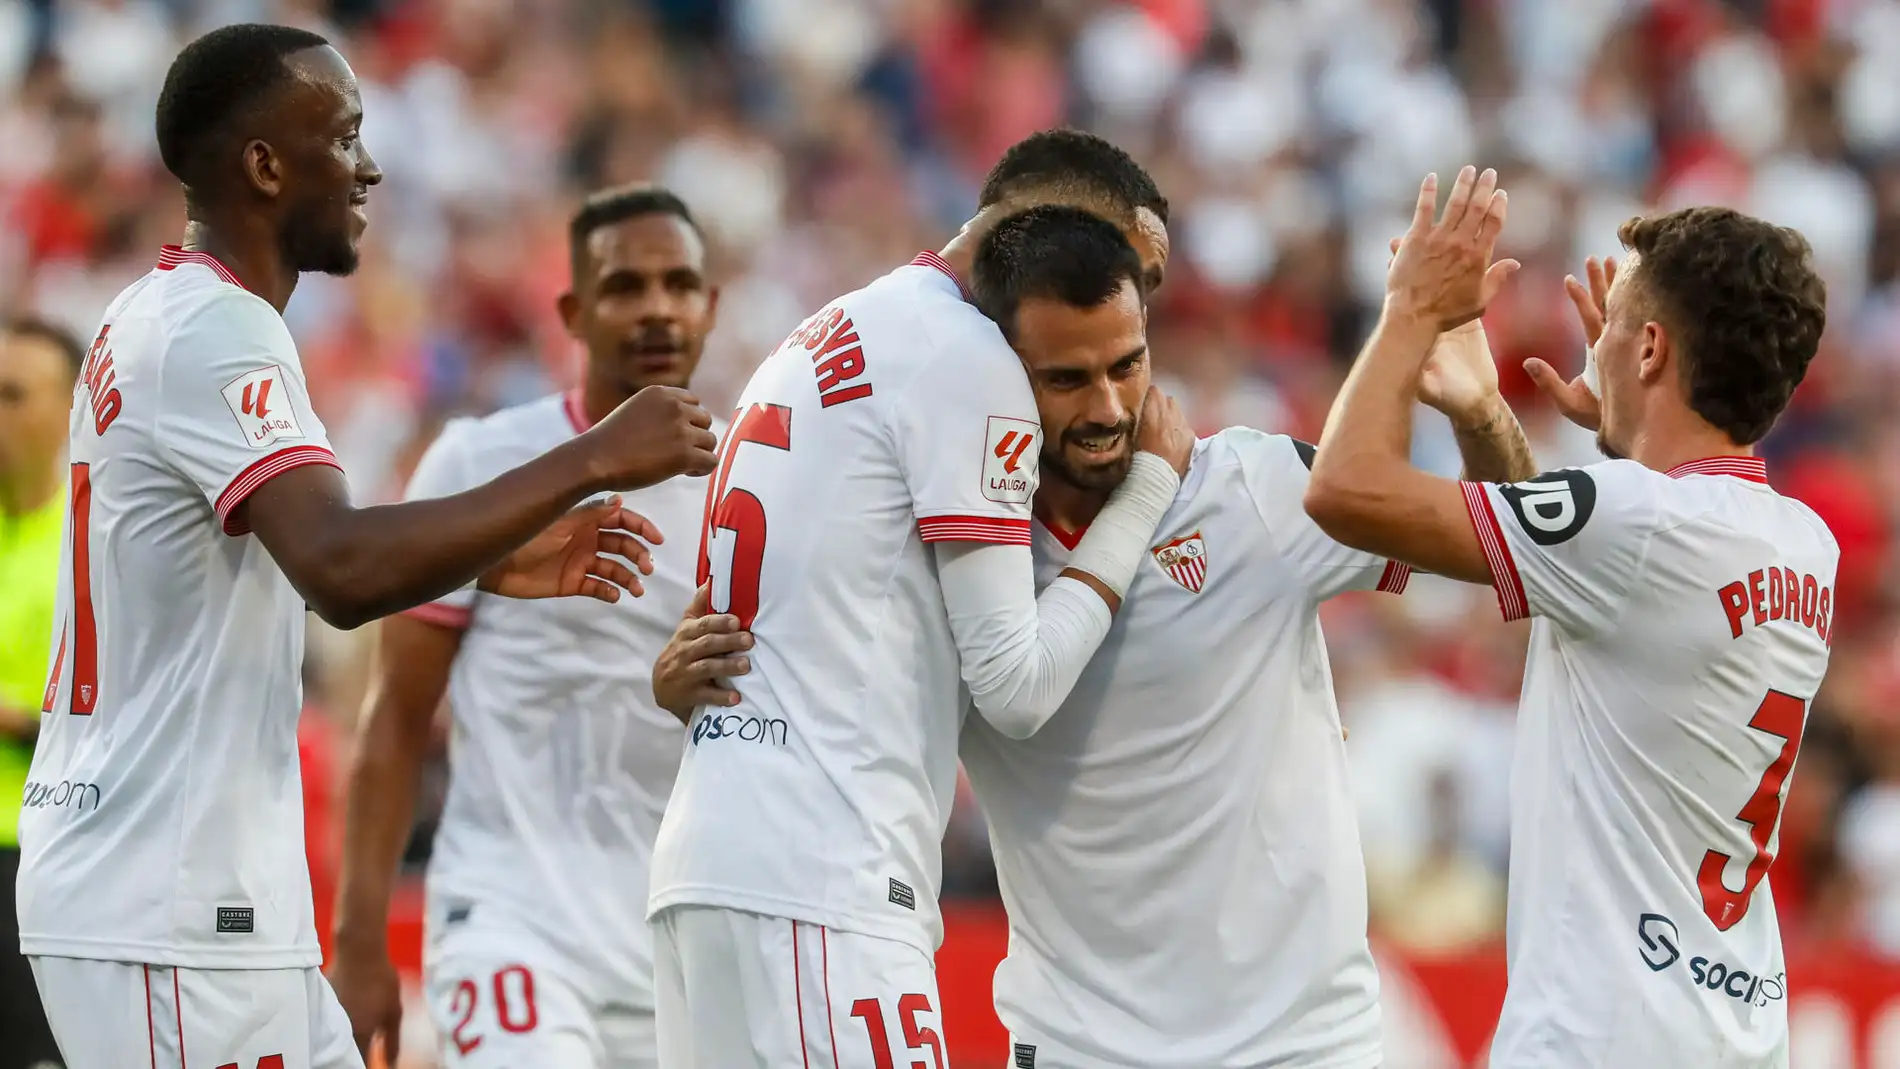 El centrocampista del Sevilla Suso celebra tras anotar un gol, el tercero ante el Almería, con sus compañeros este martes, durante el partido de liga disputado en el estadio Sánchez Pizjuan de Sevilla.